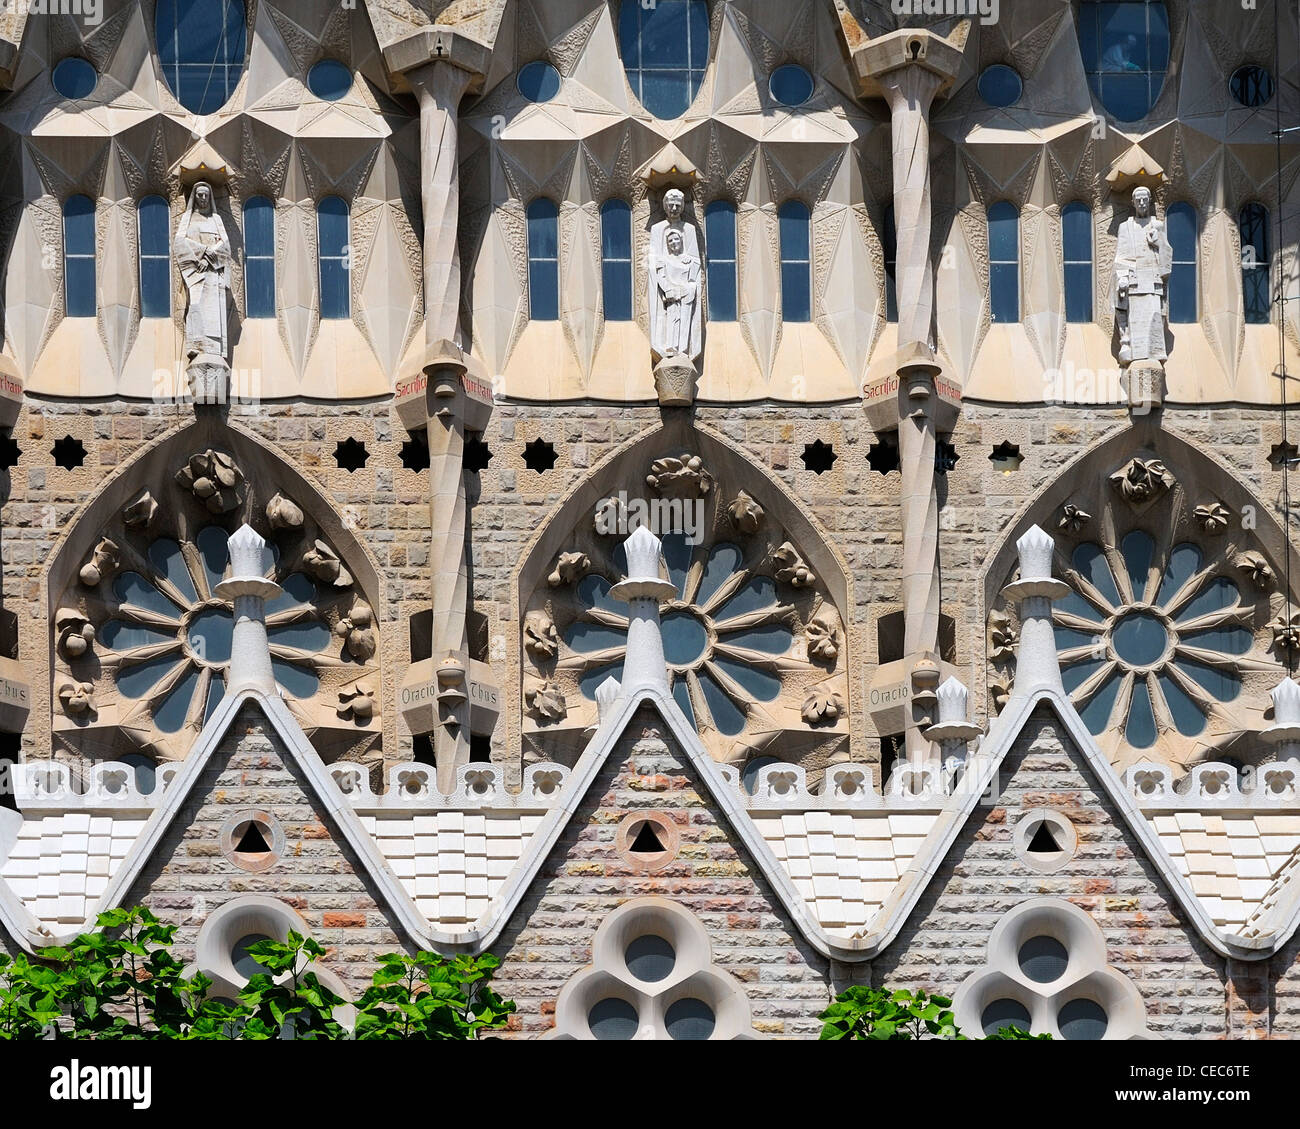 Sagrada Familia (Church of the Holy Family), Barcelona, Spain. Stock Photo